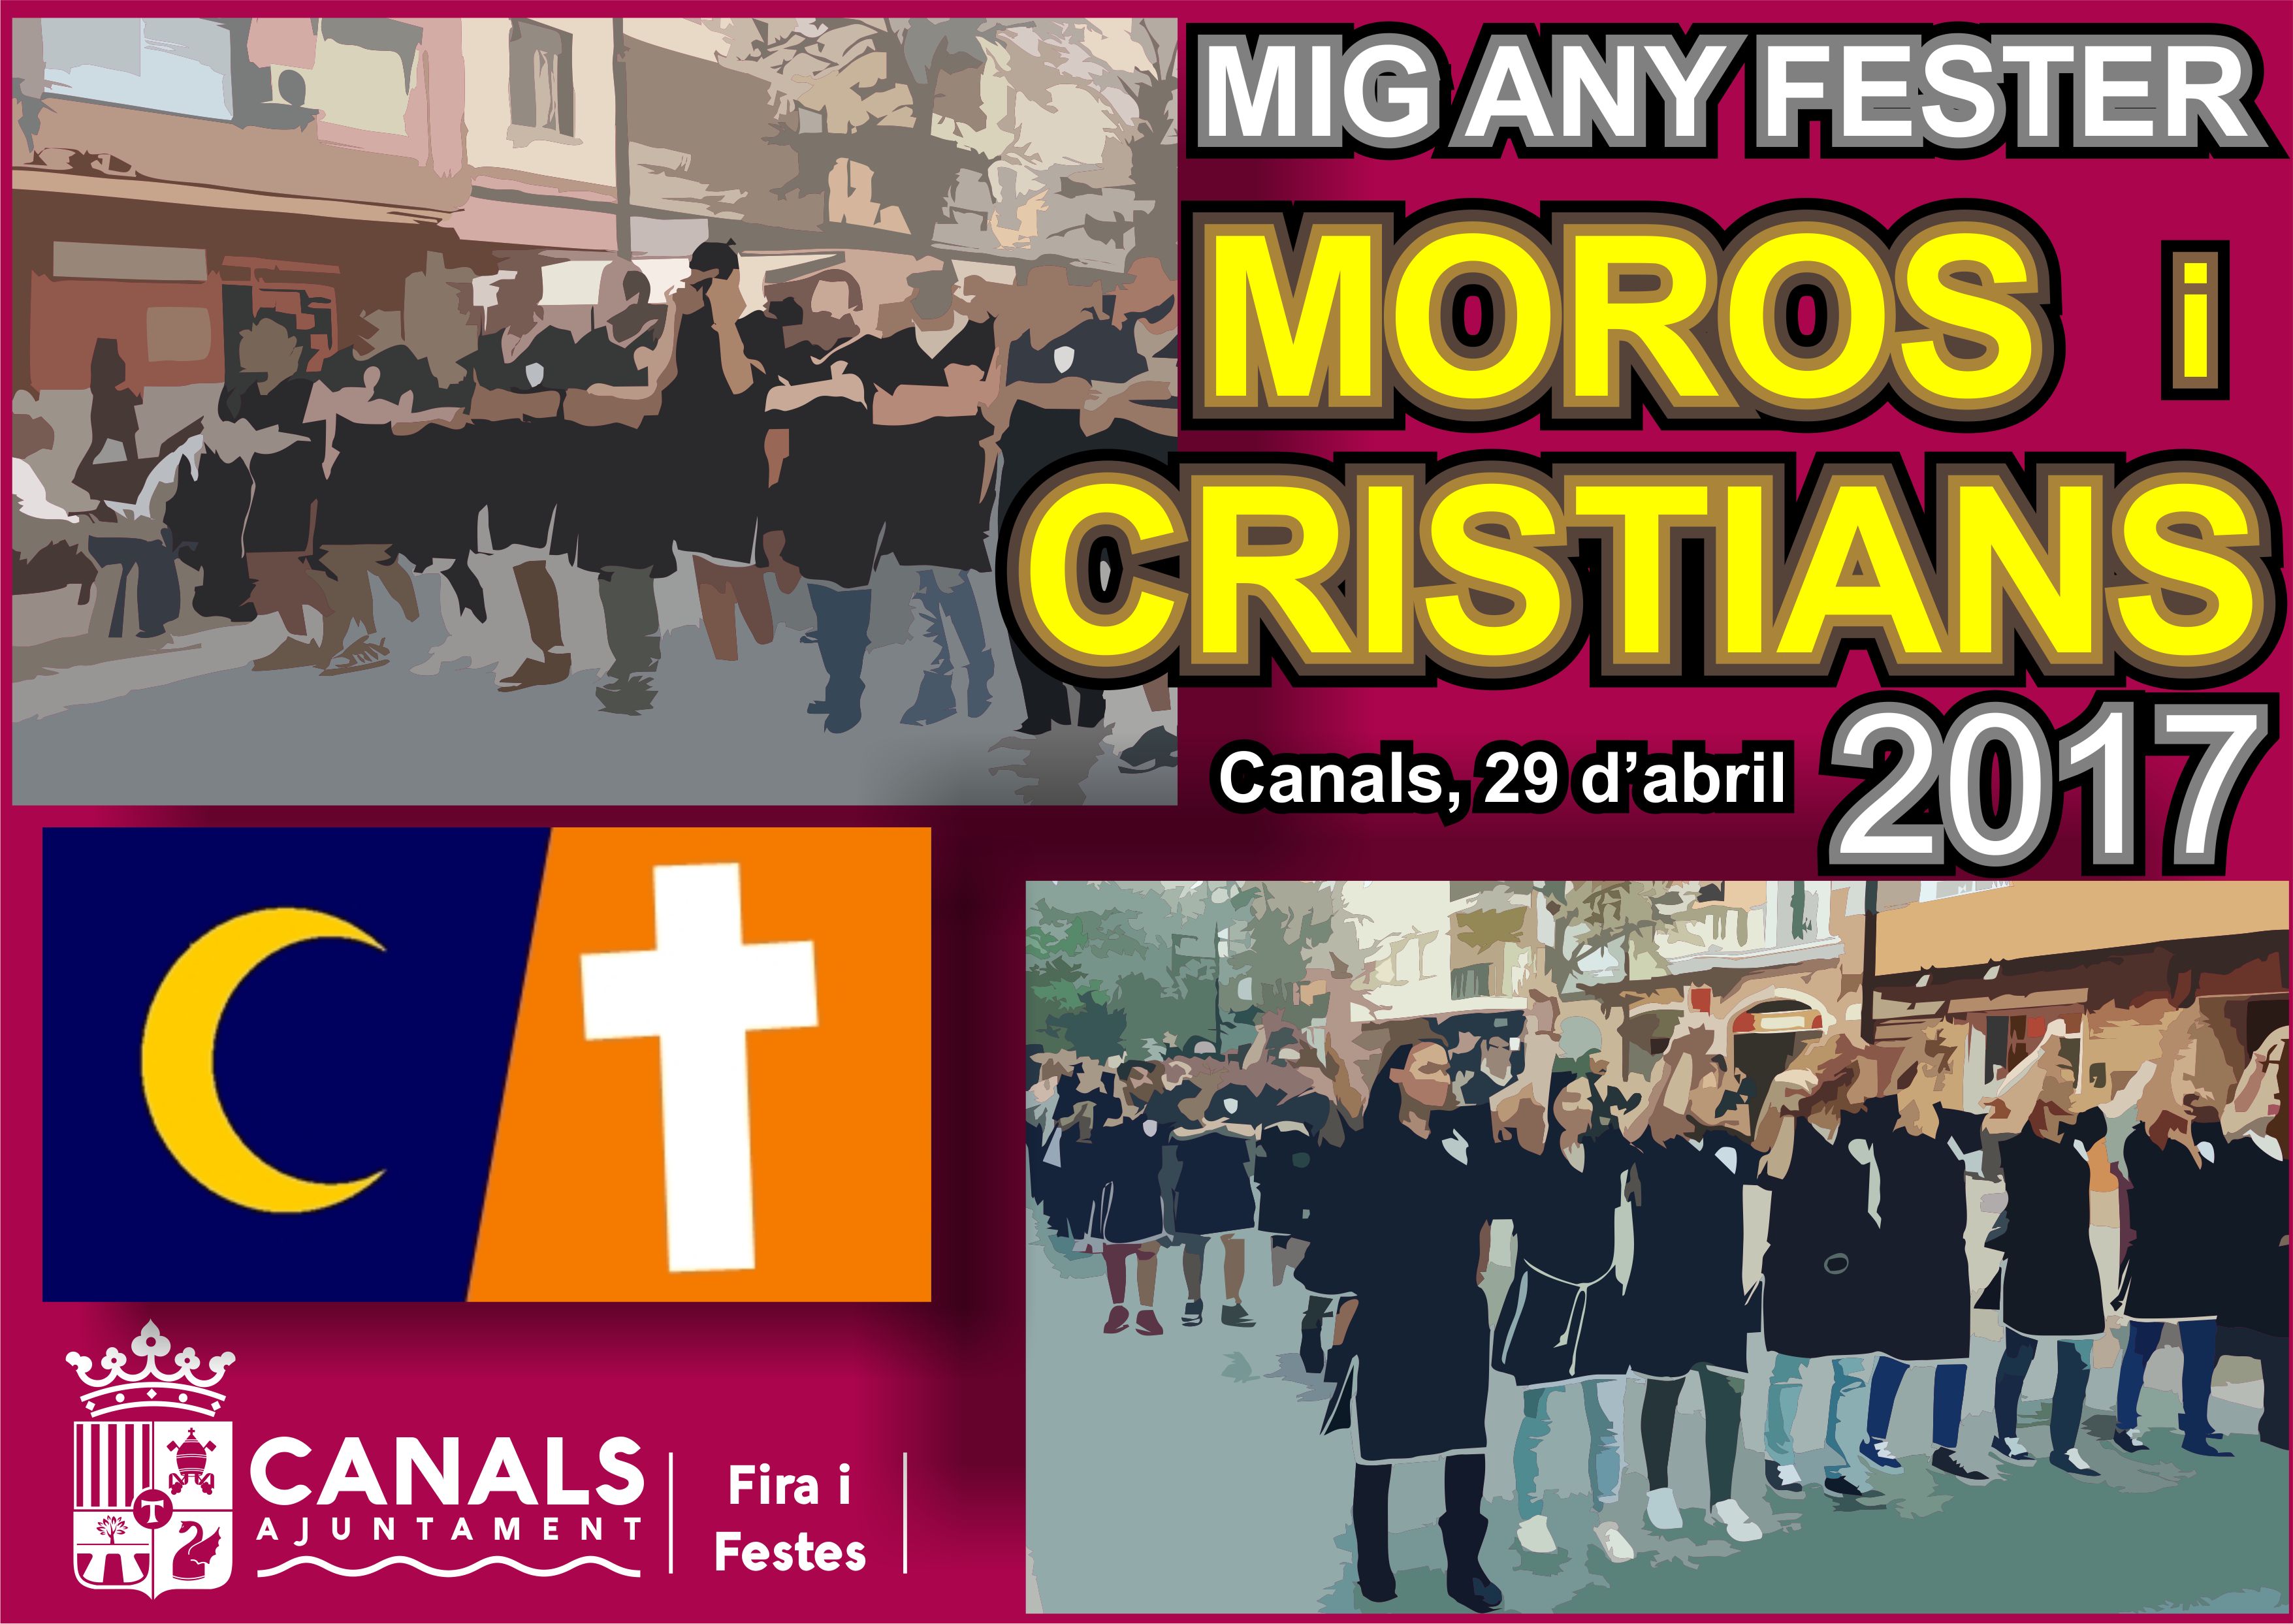 2017.04.27 Mig Any Moros i Cristians. Ajuntament de Canals